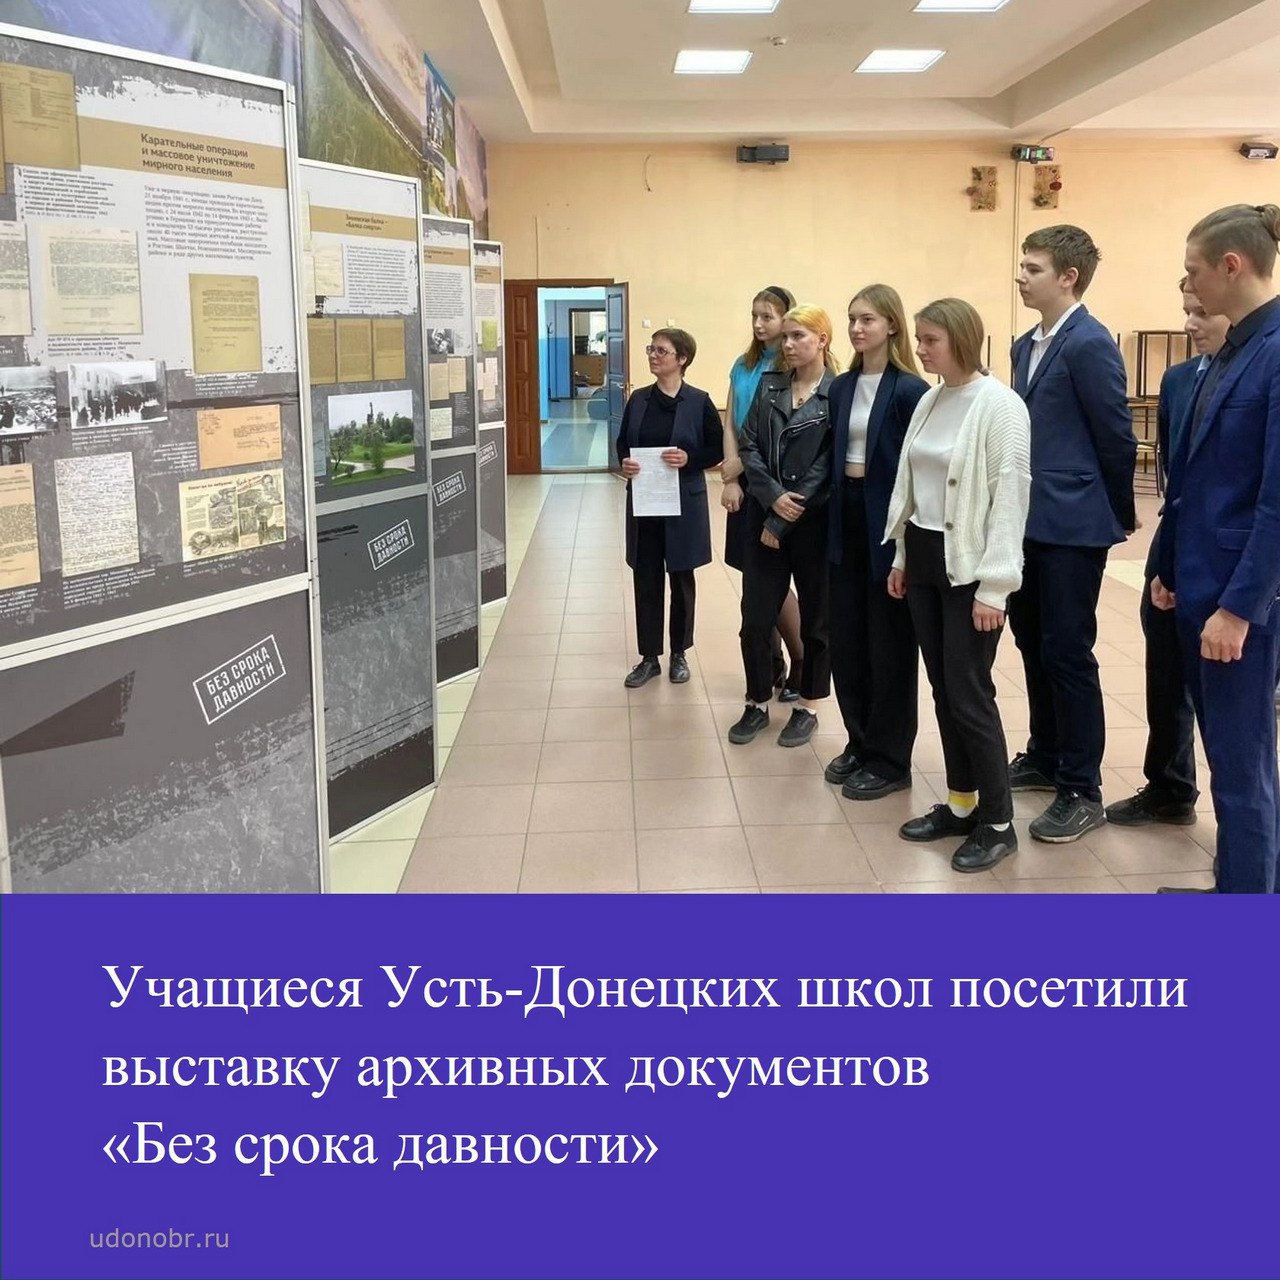 Учащиеся Усть-Донецких школ посетили выставку архивных документов «Без срока давности»